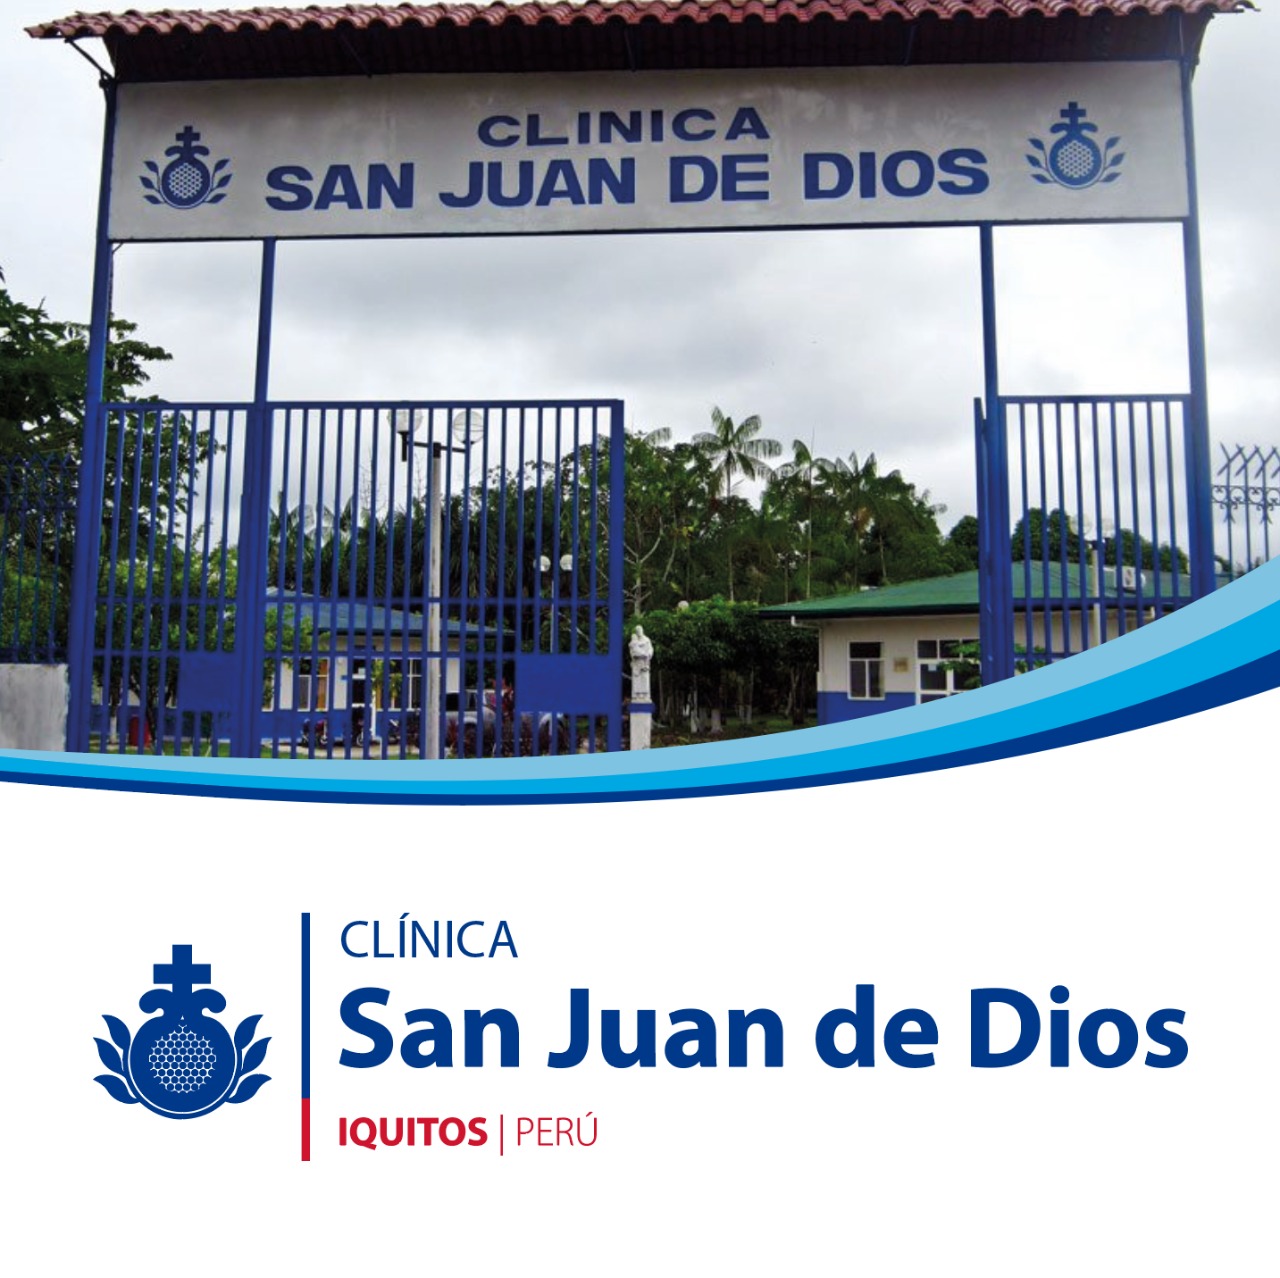 Centro Peru Clinica San Juan de Dios Iquitos | Orden Hospitalaria San Juan de Dios